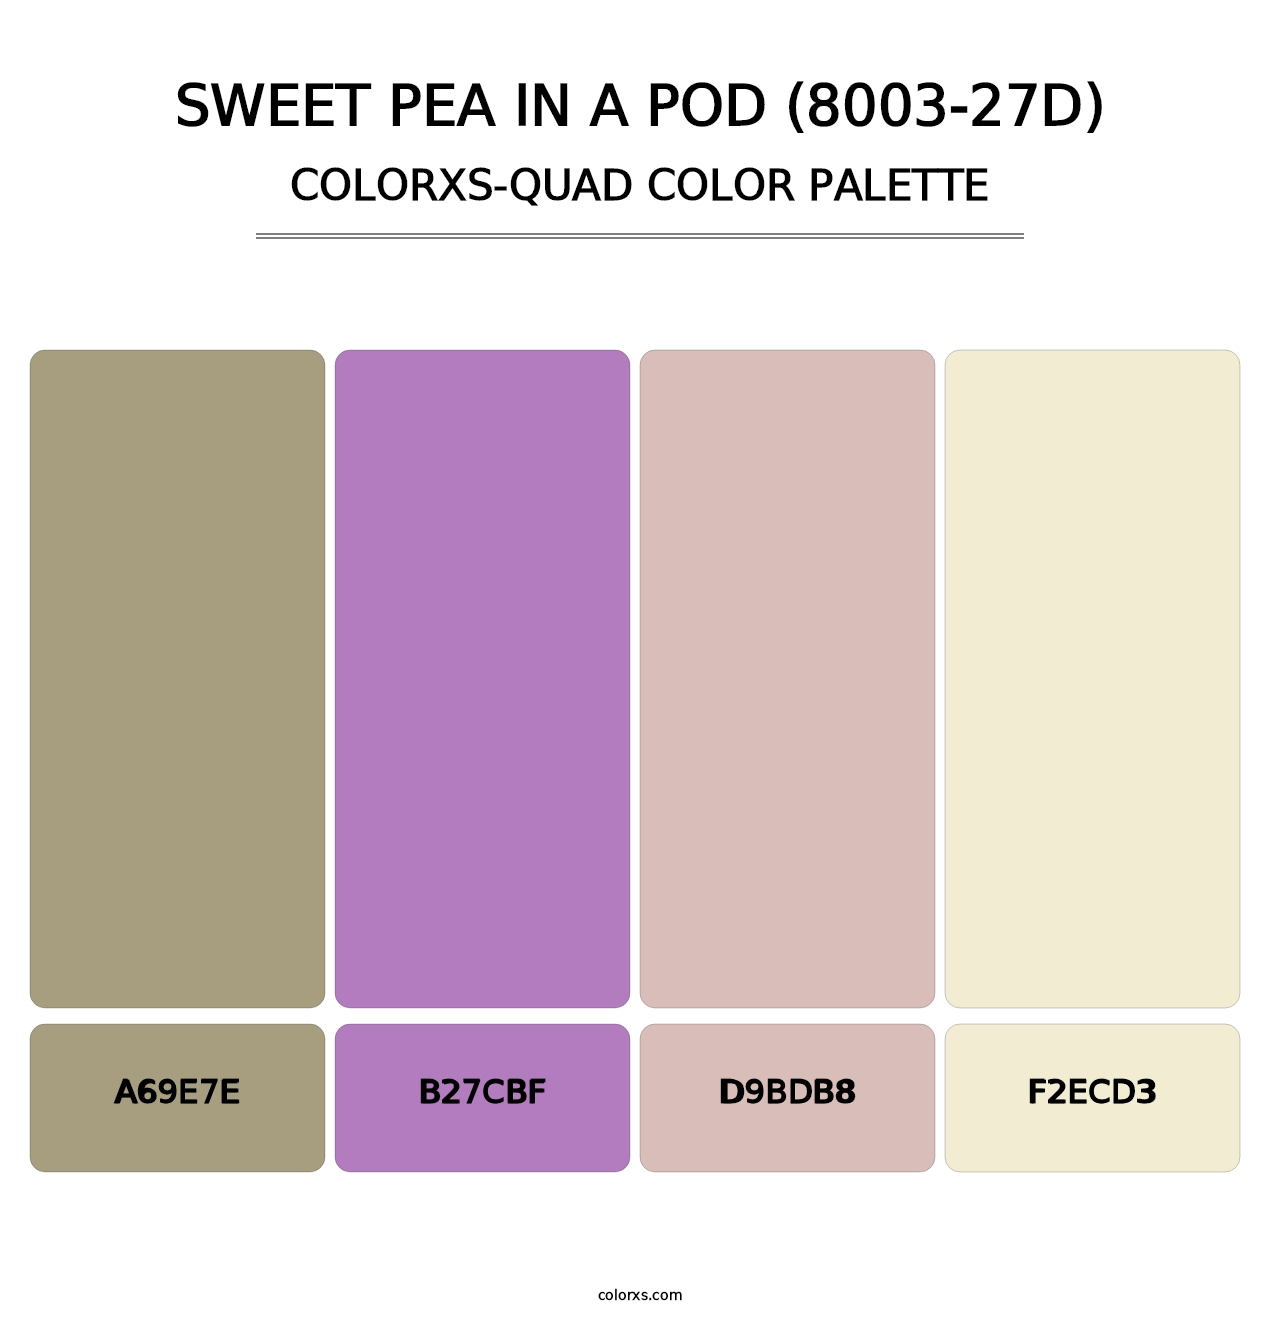 Sweet Pea in a Pod (8003-27D) - Colorxs Quad Palette